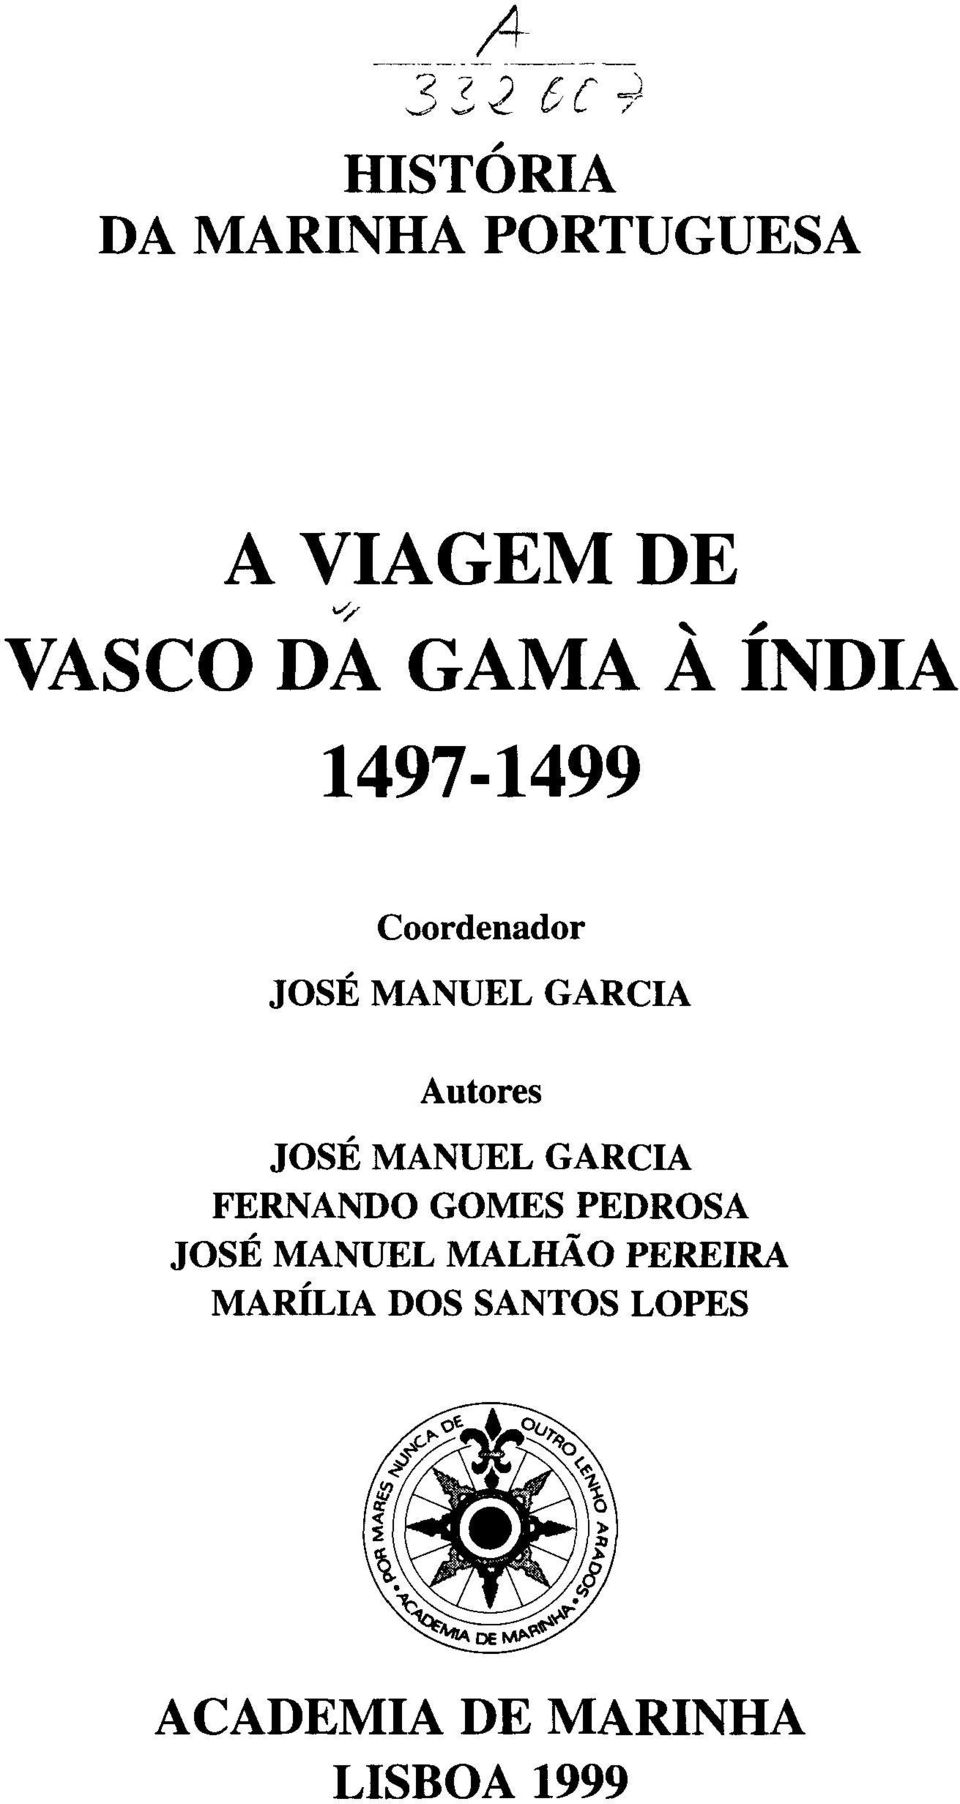 JOSÉ MANUEL GARCIA FERNANDO GOMES PEDROSA JOSÉ MANUEL MALHÃO